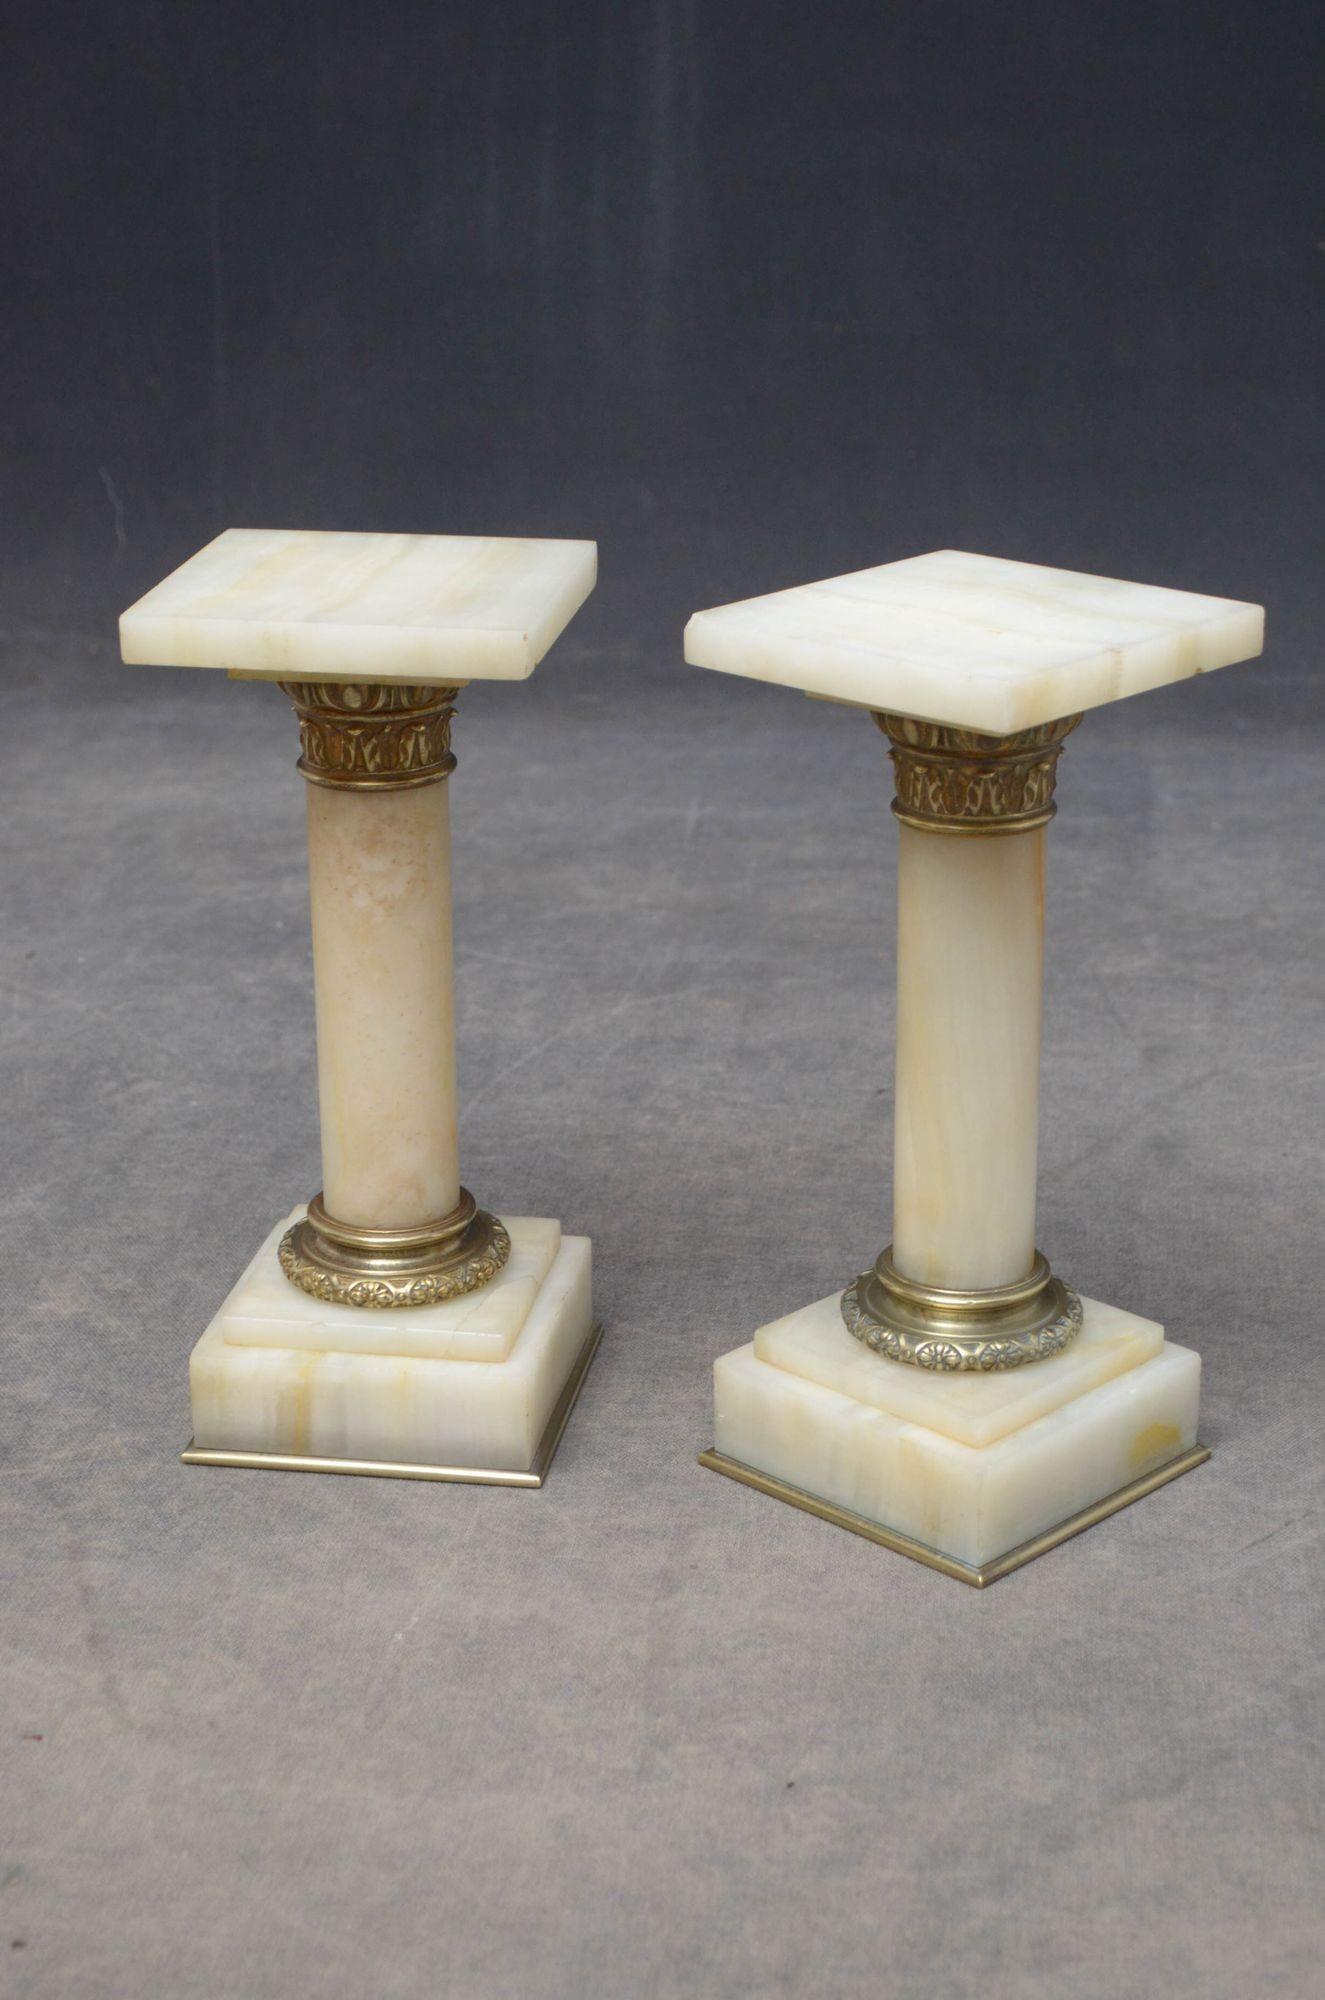 K081, une rare paire de colonnes antiques en marbre blanc veiné, chacune ayant un plateau carré (l'une avec un petit éclat au coin), un collier en laiton, des colonnes veinées se terminant par un collier en laiton et une base veinée à gradins,